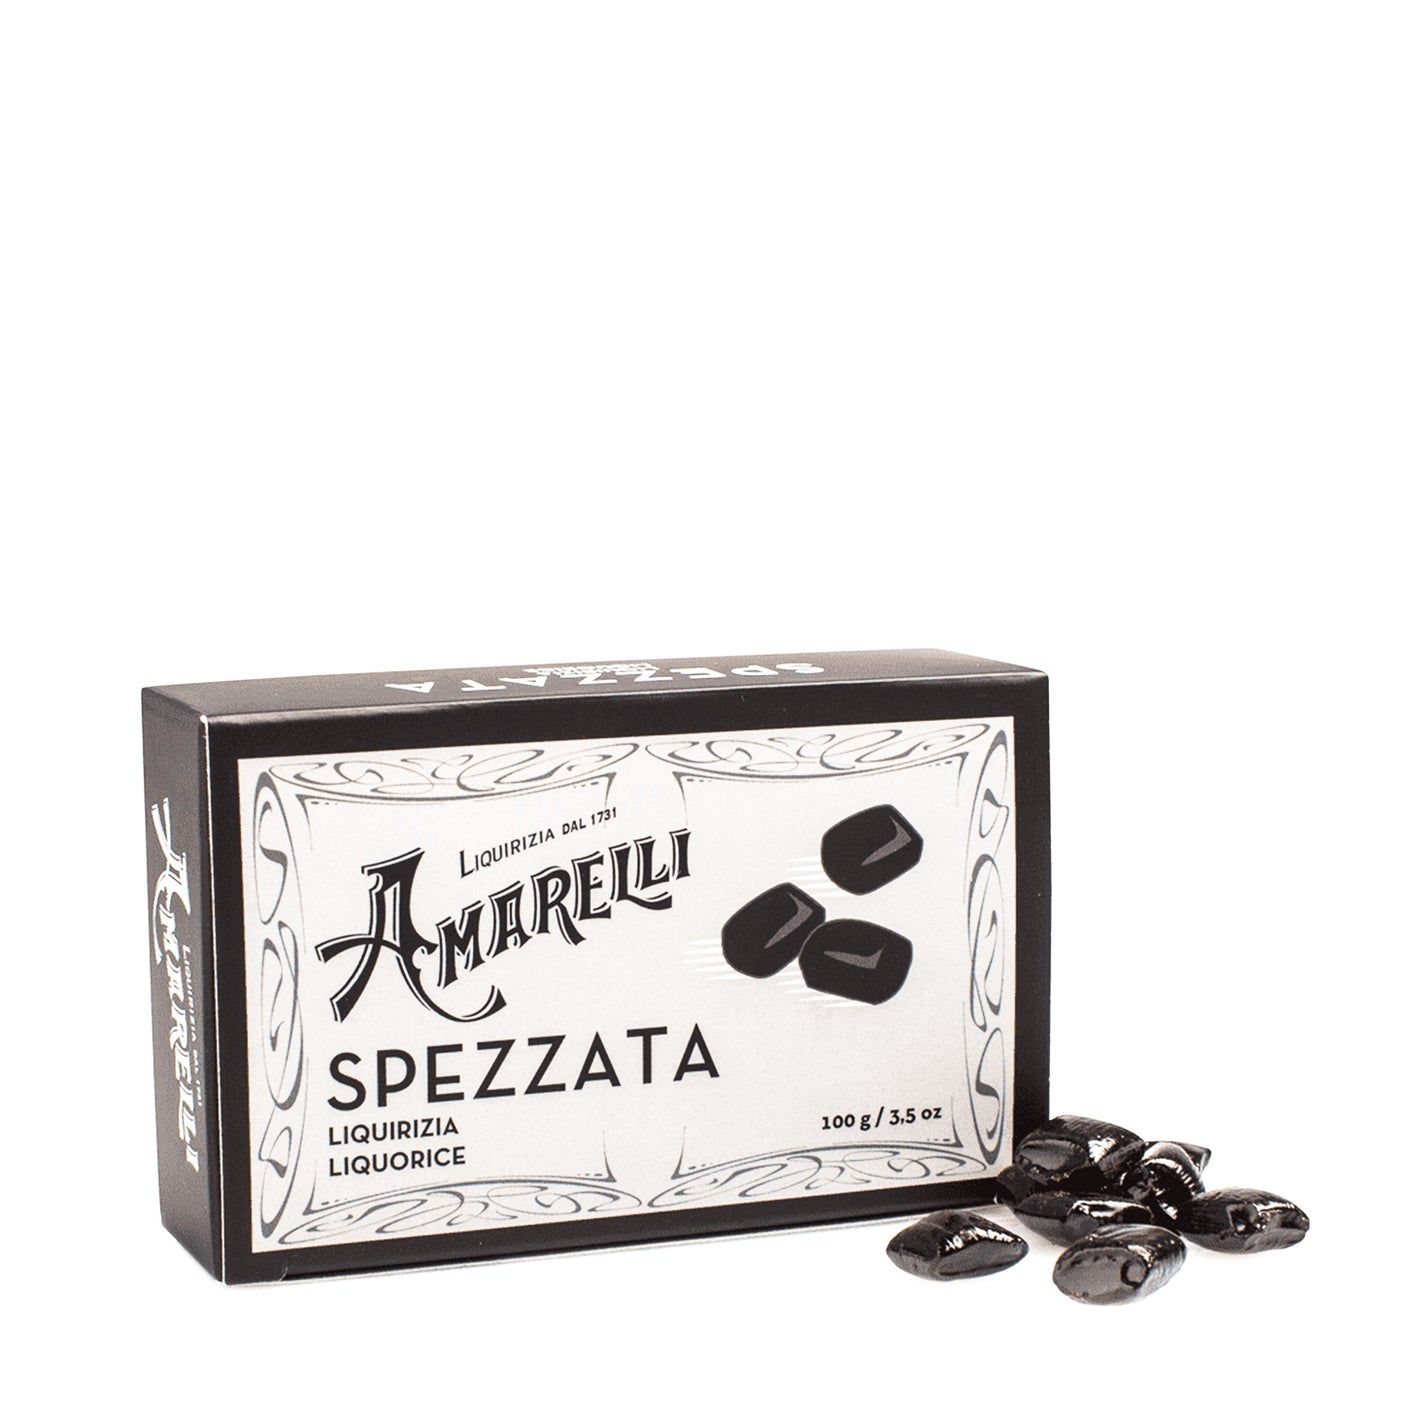 Amarelli Spezzata Licorice - Black Box